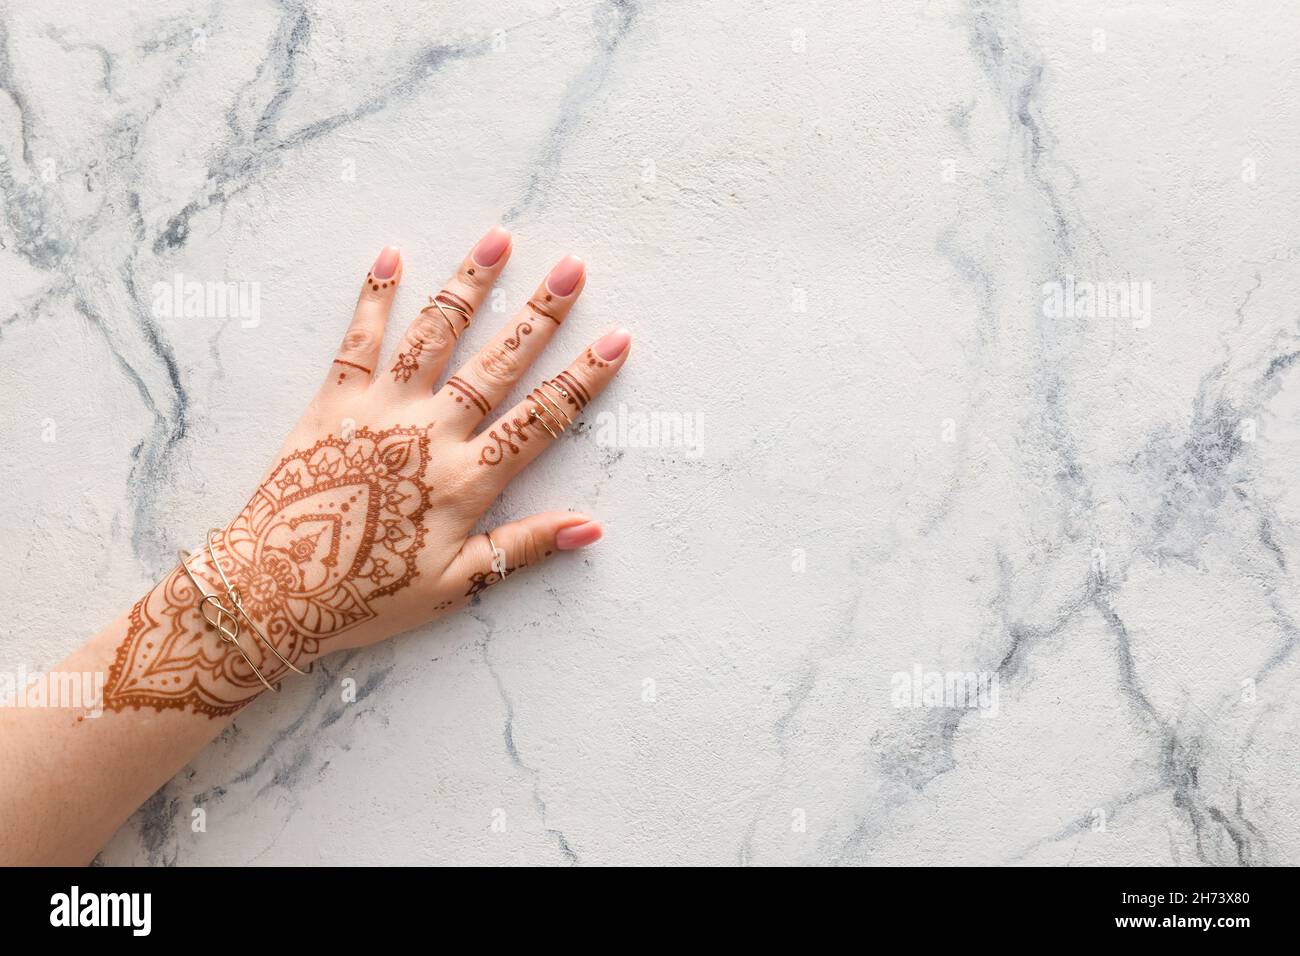 Frau mit Henna bemalten Händen in Ringen und Armbändern auf hellem Marmorhintergrund Stockfoto